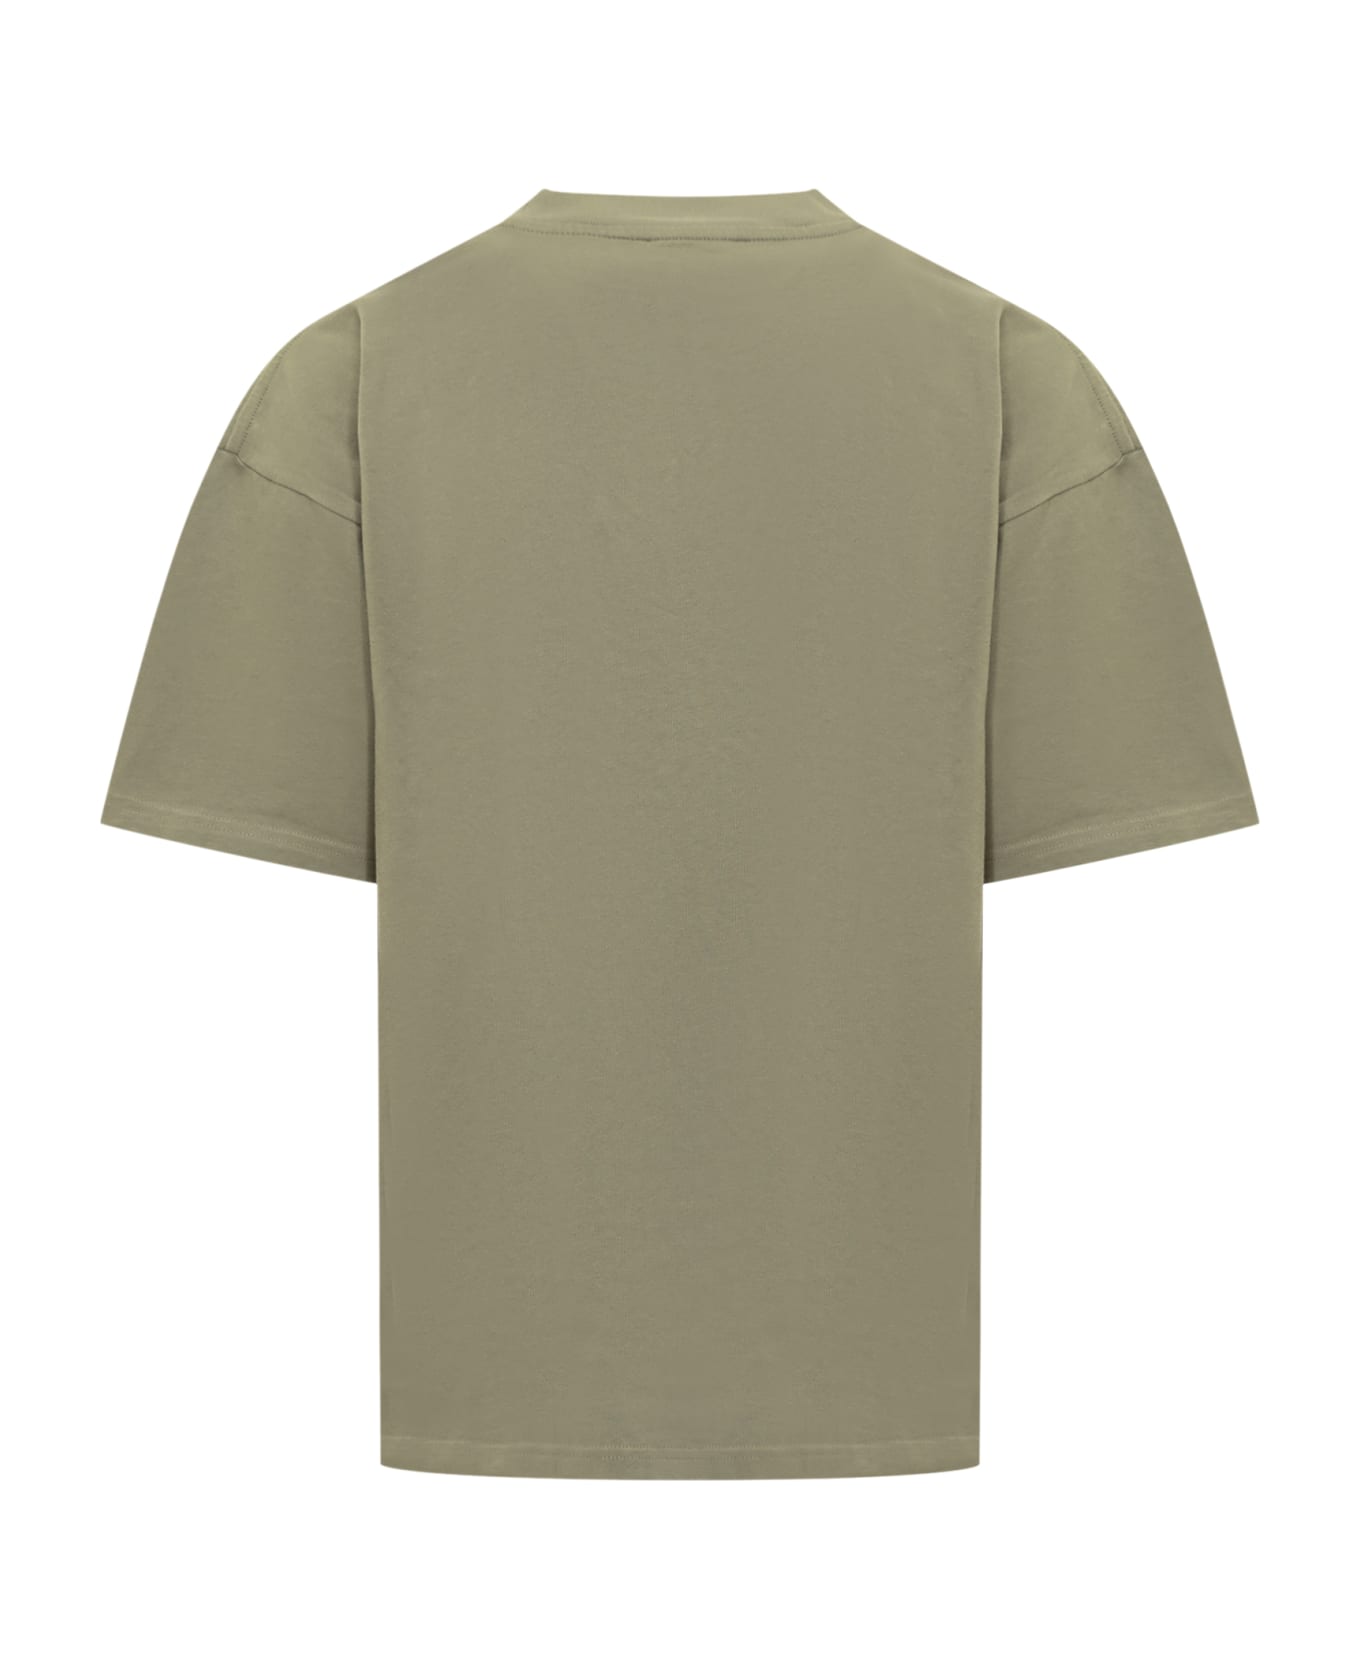 REPRESENT Thoroughbred T-shirt - Khaki シャツ